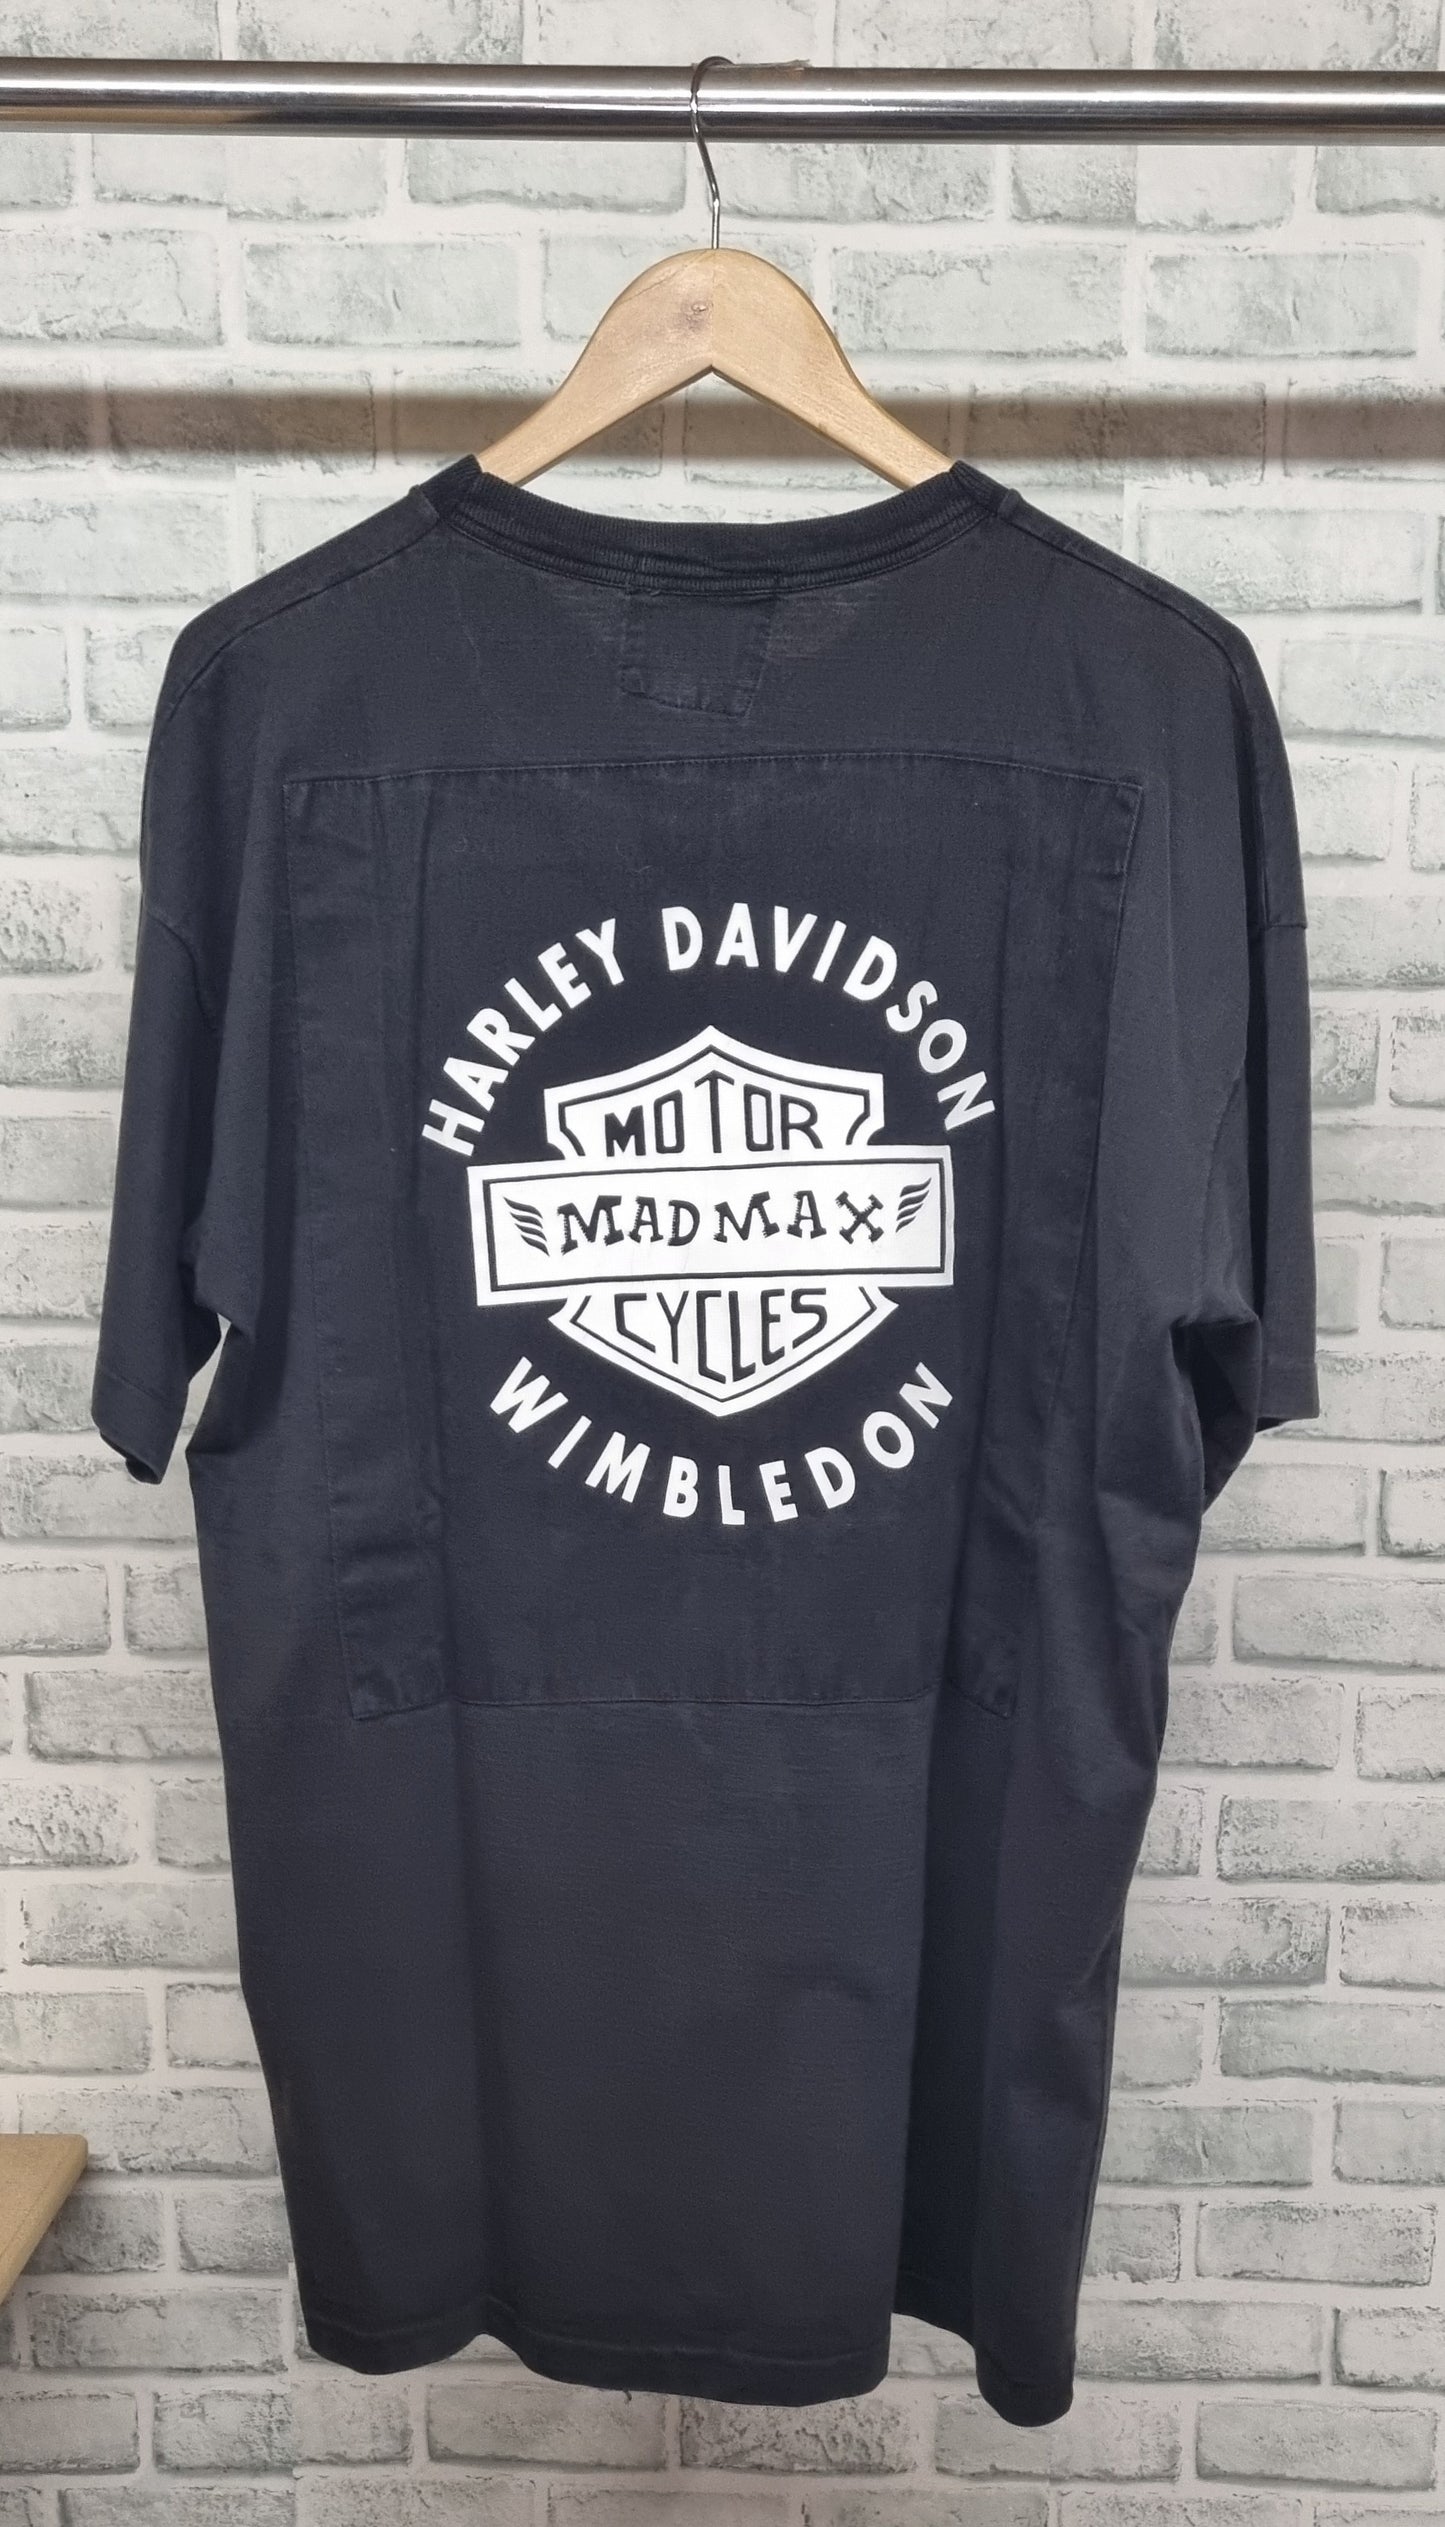 Harley Davidson Mad Max Wimbledon T-Shirt Size Large